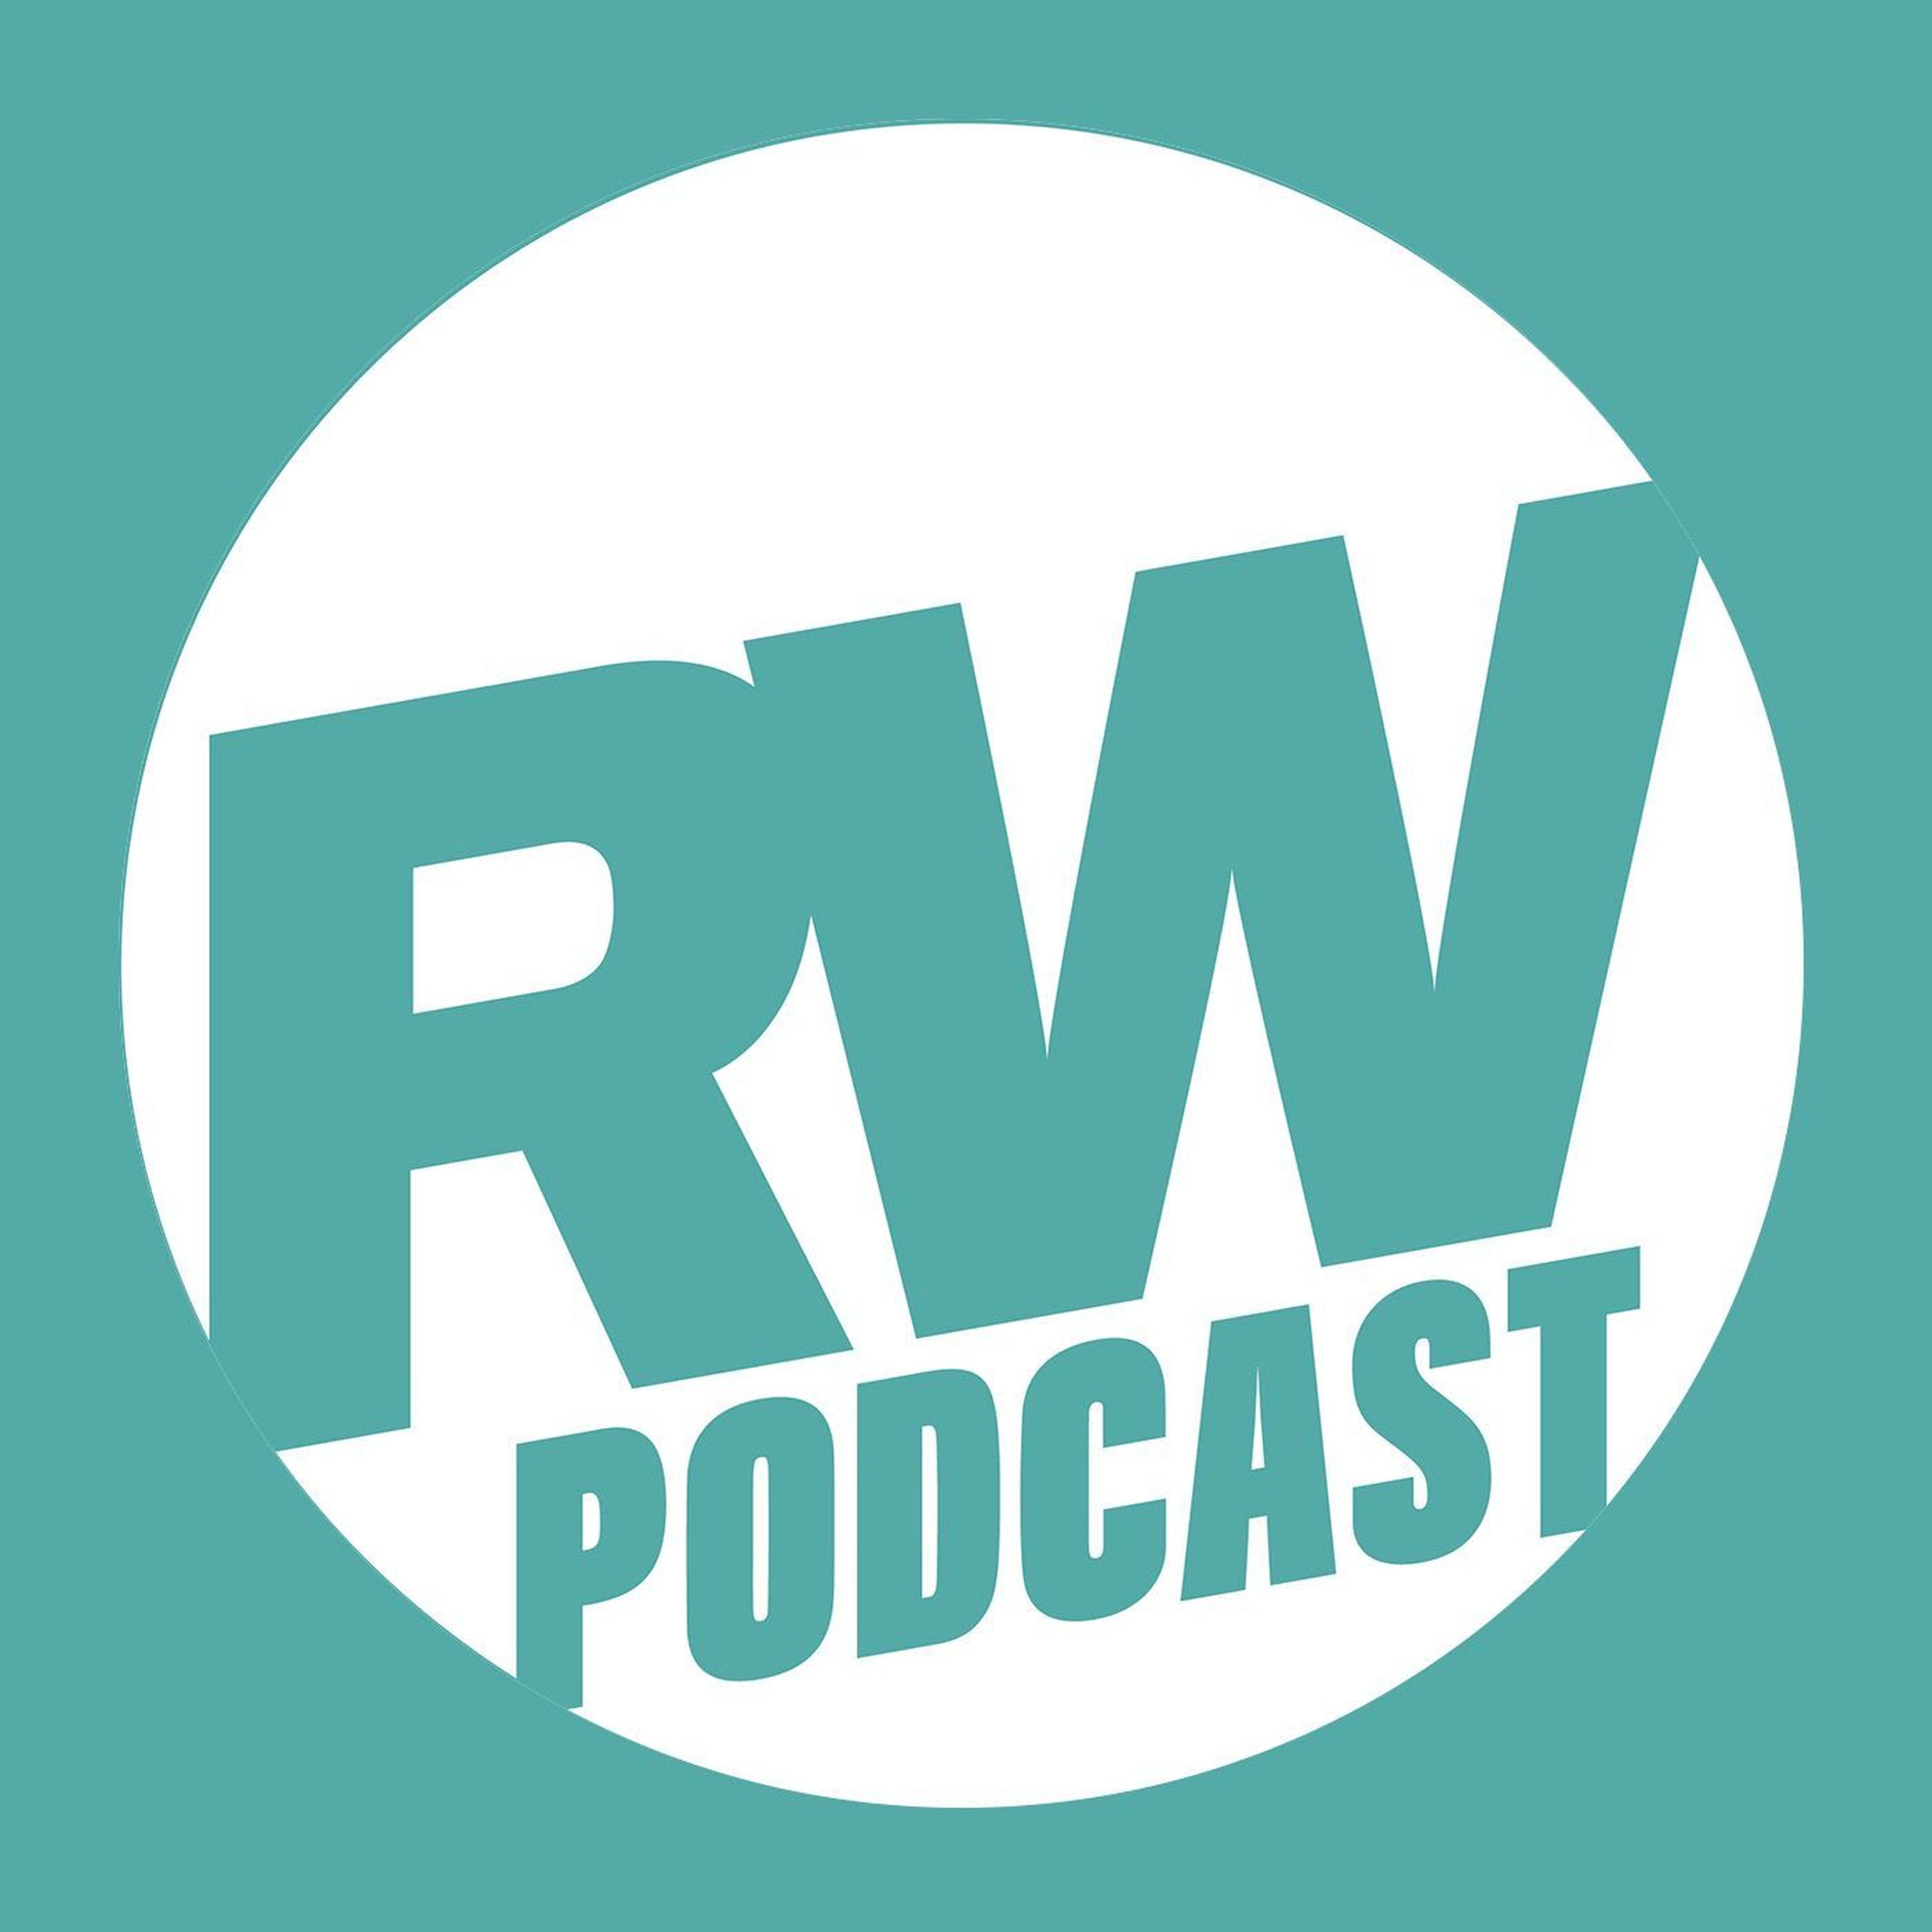 The Runner’s World UK Podcast - September 2018